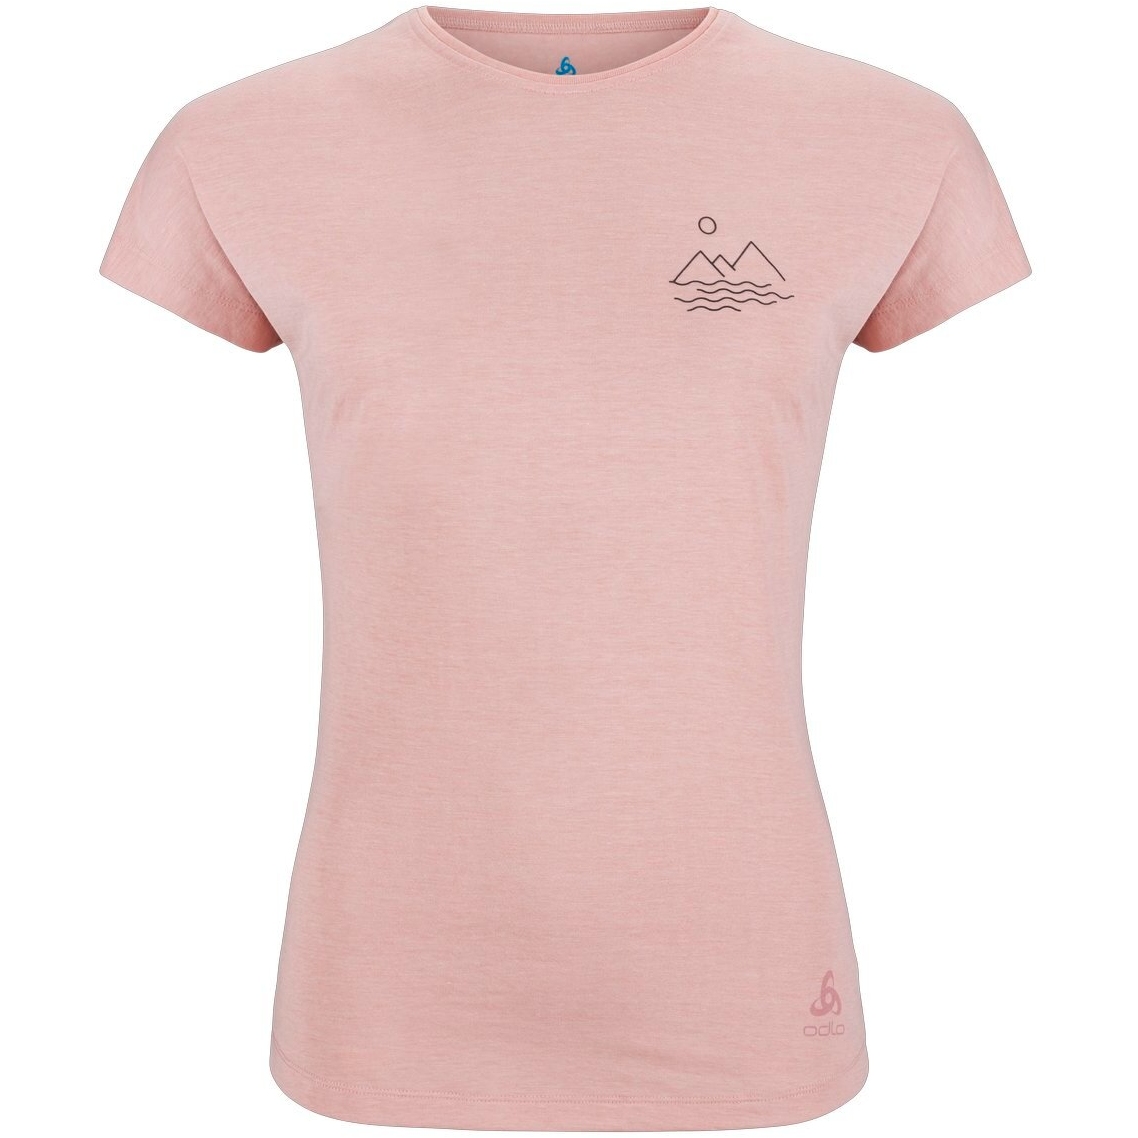 Produktbild von Odlo Ascent 365 T-Shirt mit einfachem Landschaftsprint Damen - pale mauve melange